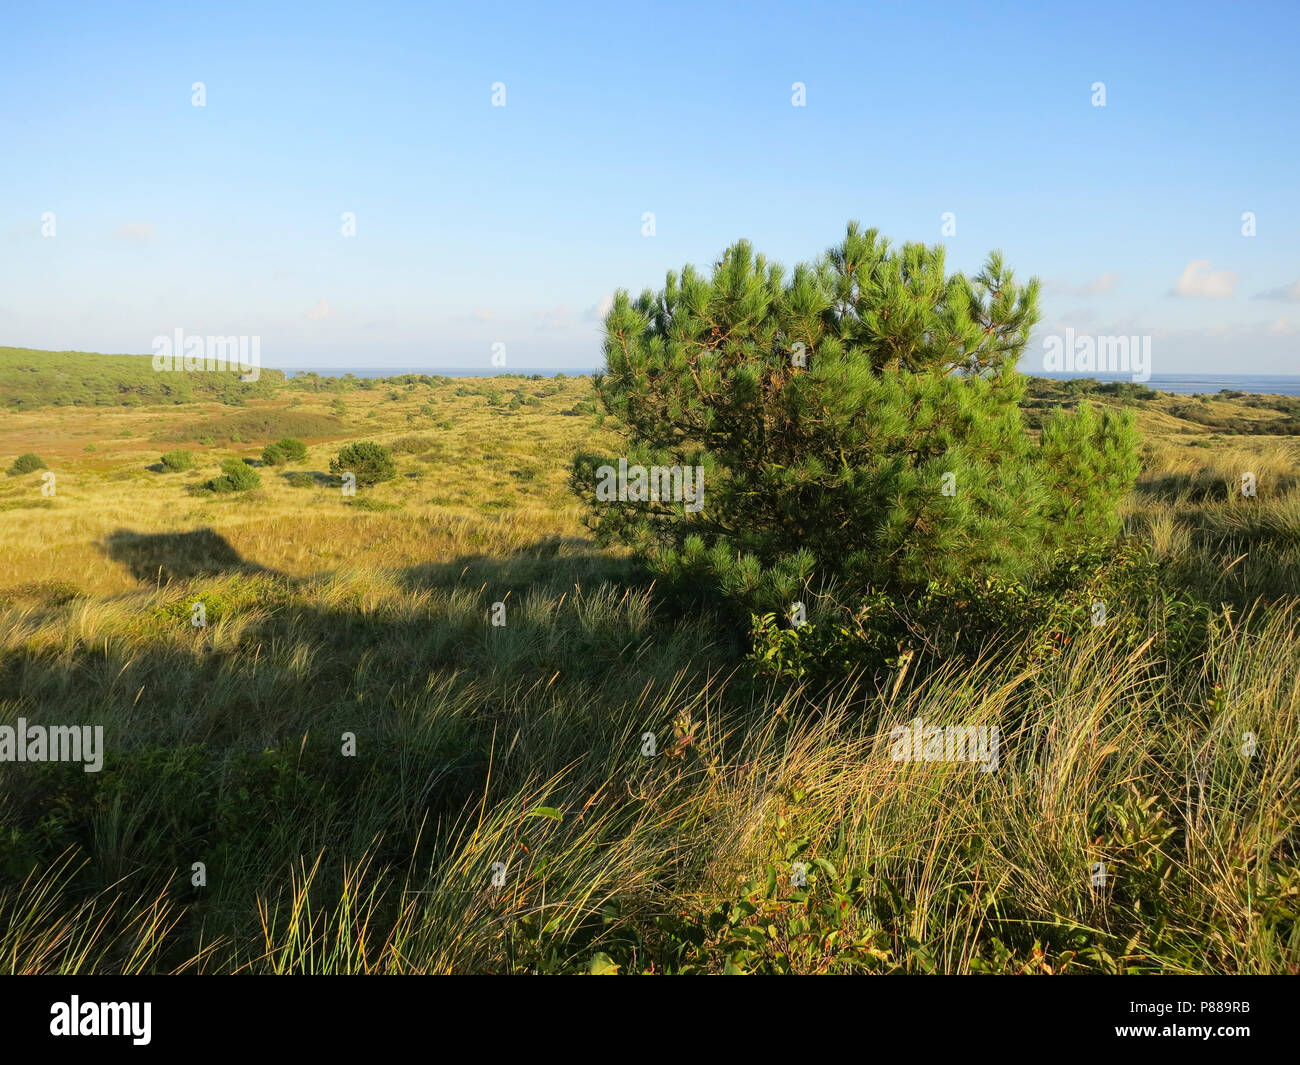 Uitzicht over duinen met naaldbomen; Overview of dunes with conifers Stock Photo